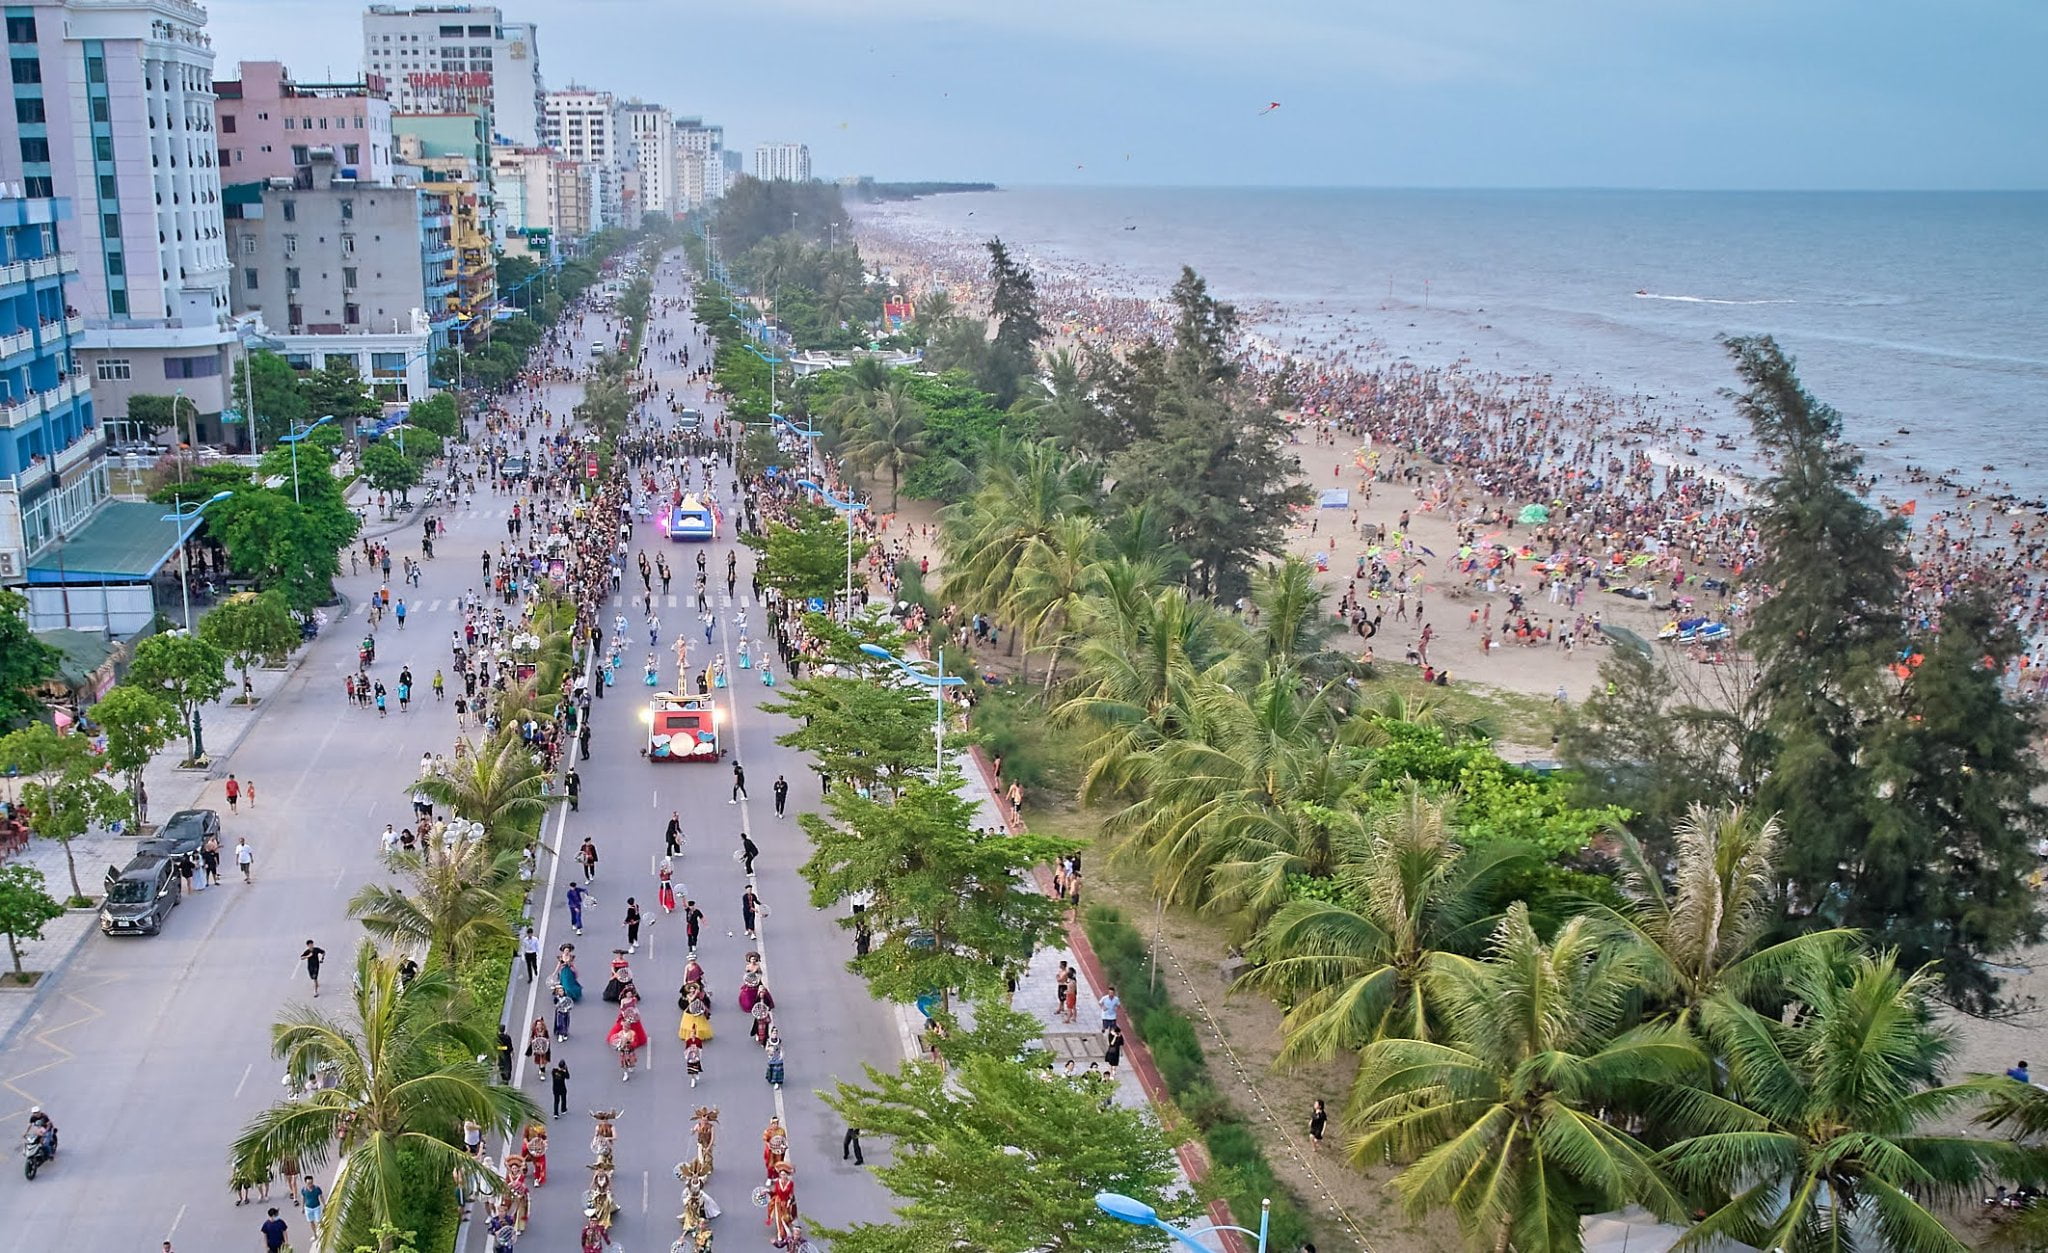 Thành phố biển Sầm Sơn đón lượng khách nhiều nhất Việt Nam hè 2022! foto